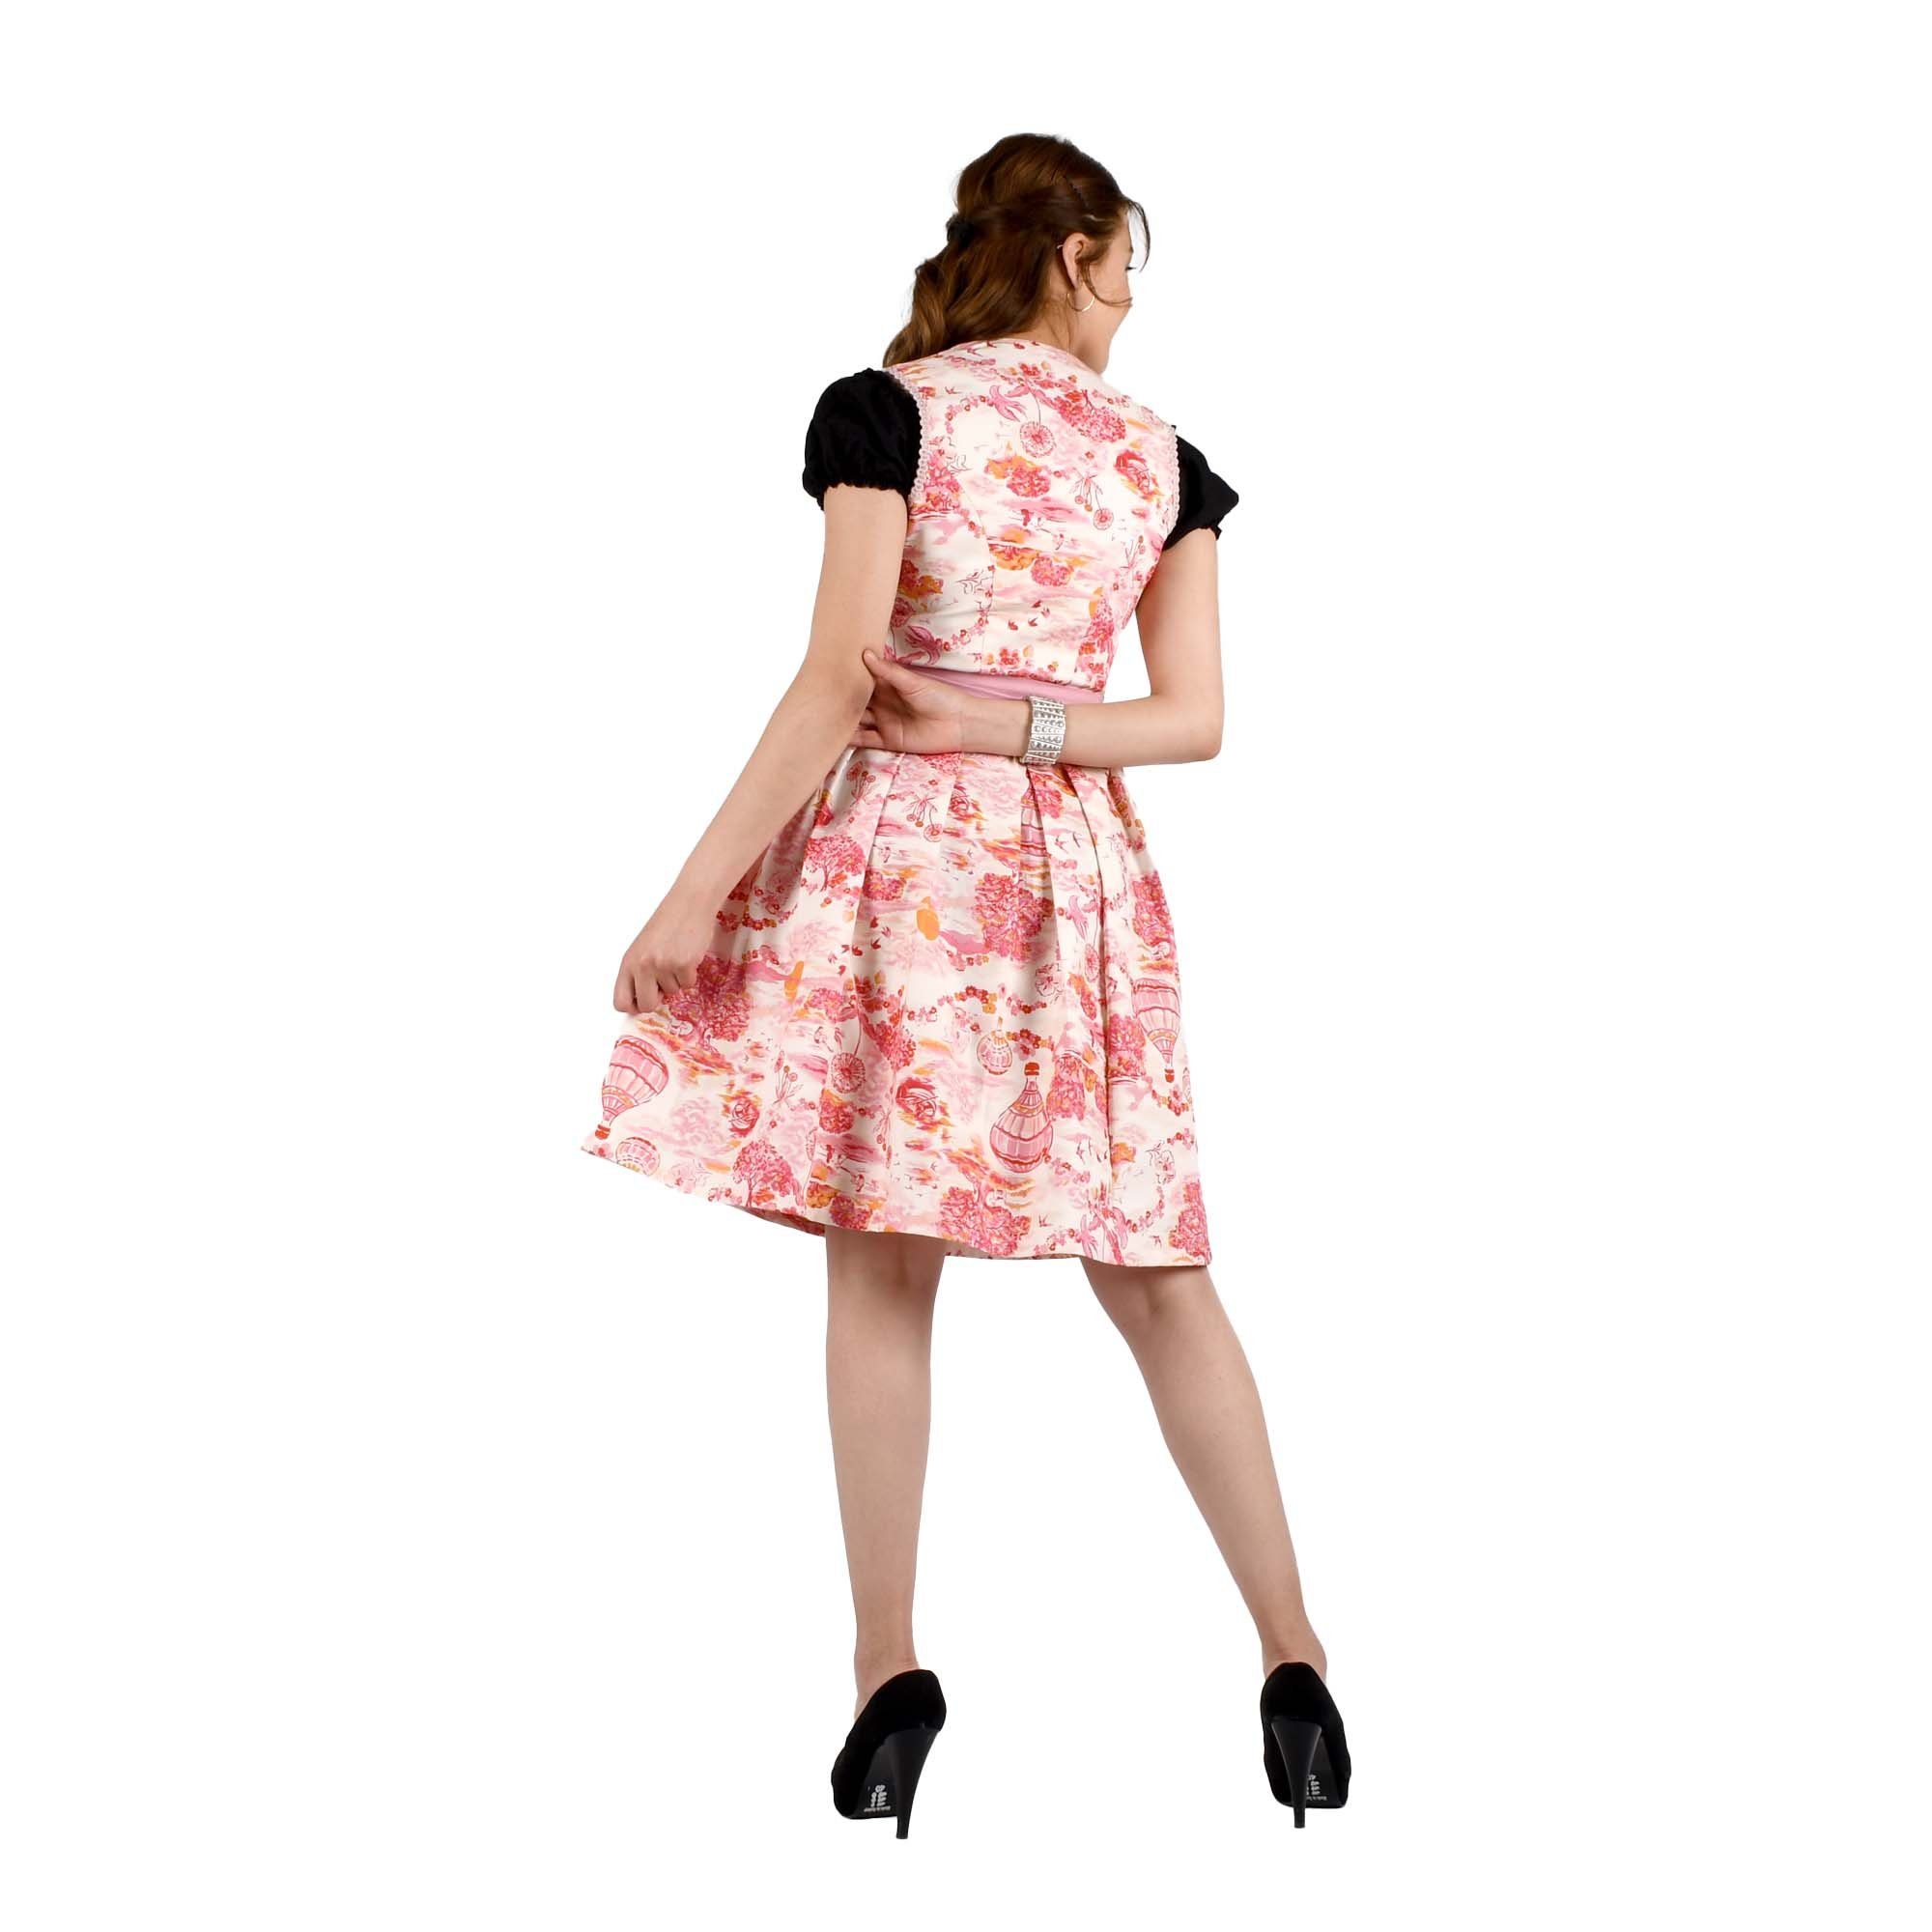 mit Blumen inkl. Dirndl Trachtenkleid Kleid Dirndlschürze 2Teilig Beige MYTRACHTENSTADL Trachtenmode Midi Rosa